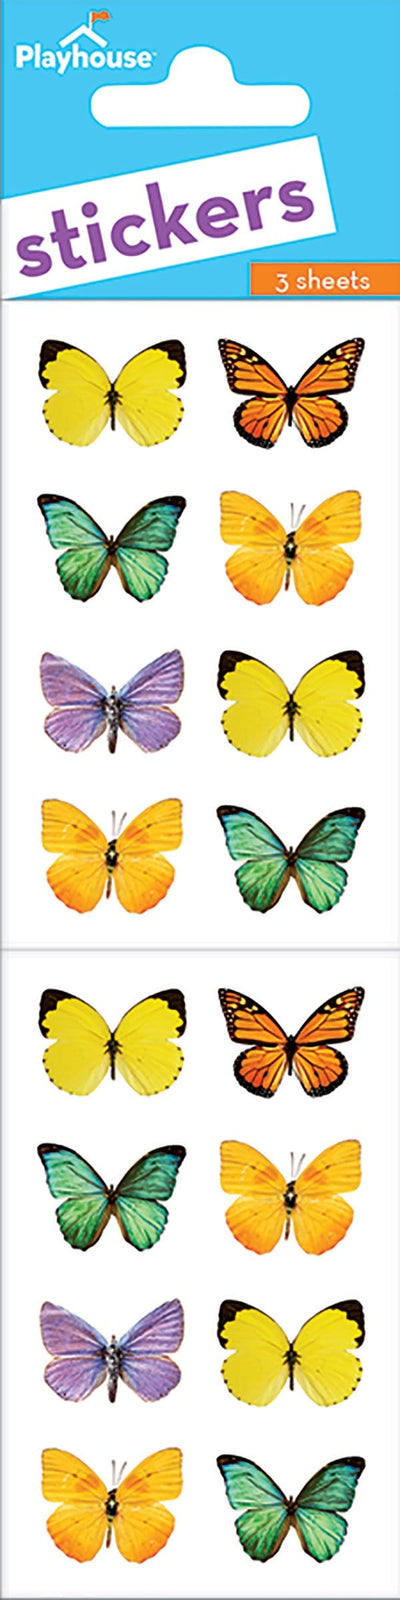 butterflies sticker pack